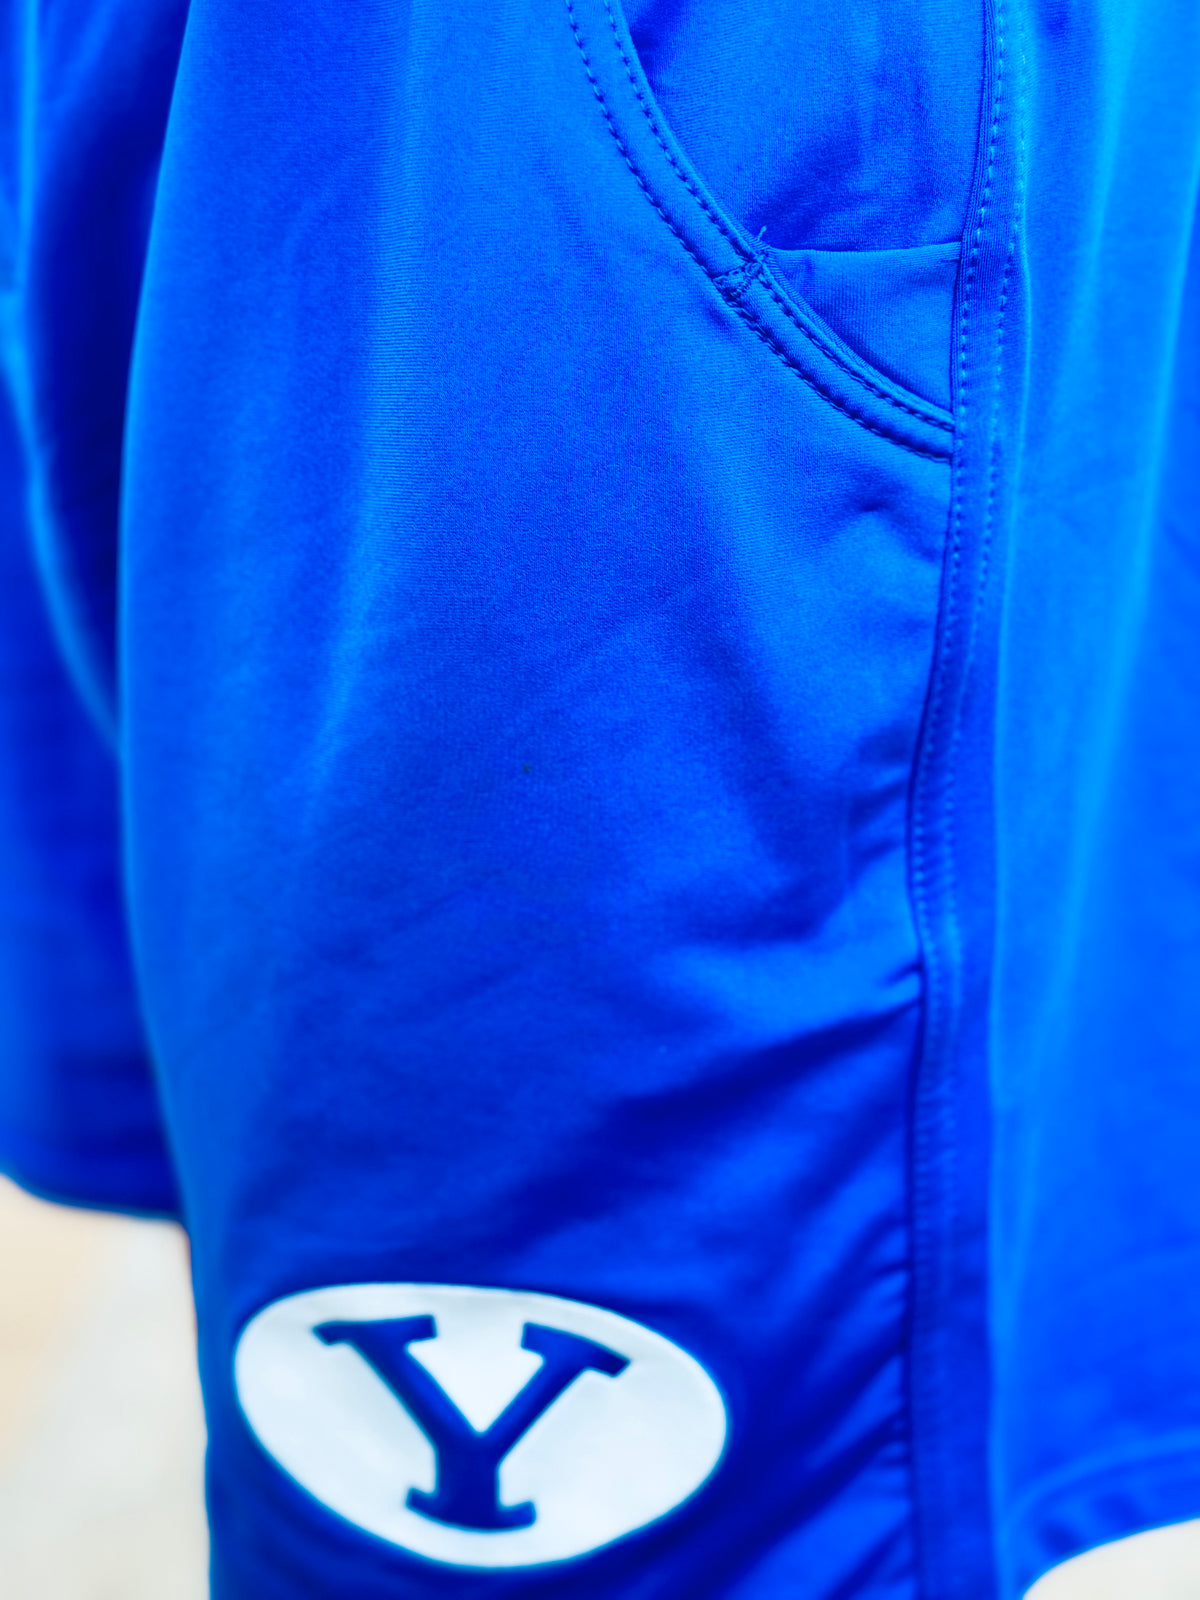 Royal Blue Athletic Shorts with BYU Stretch Y